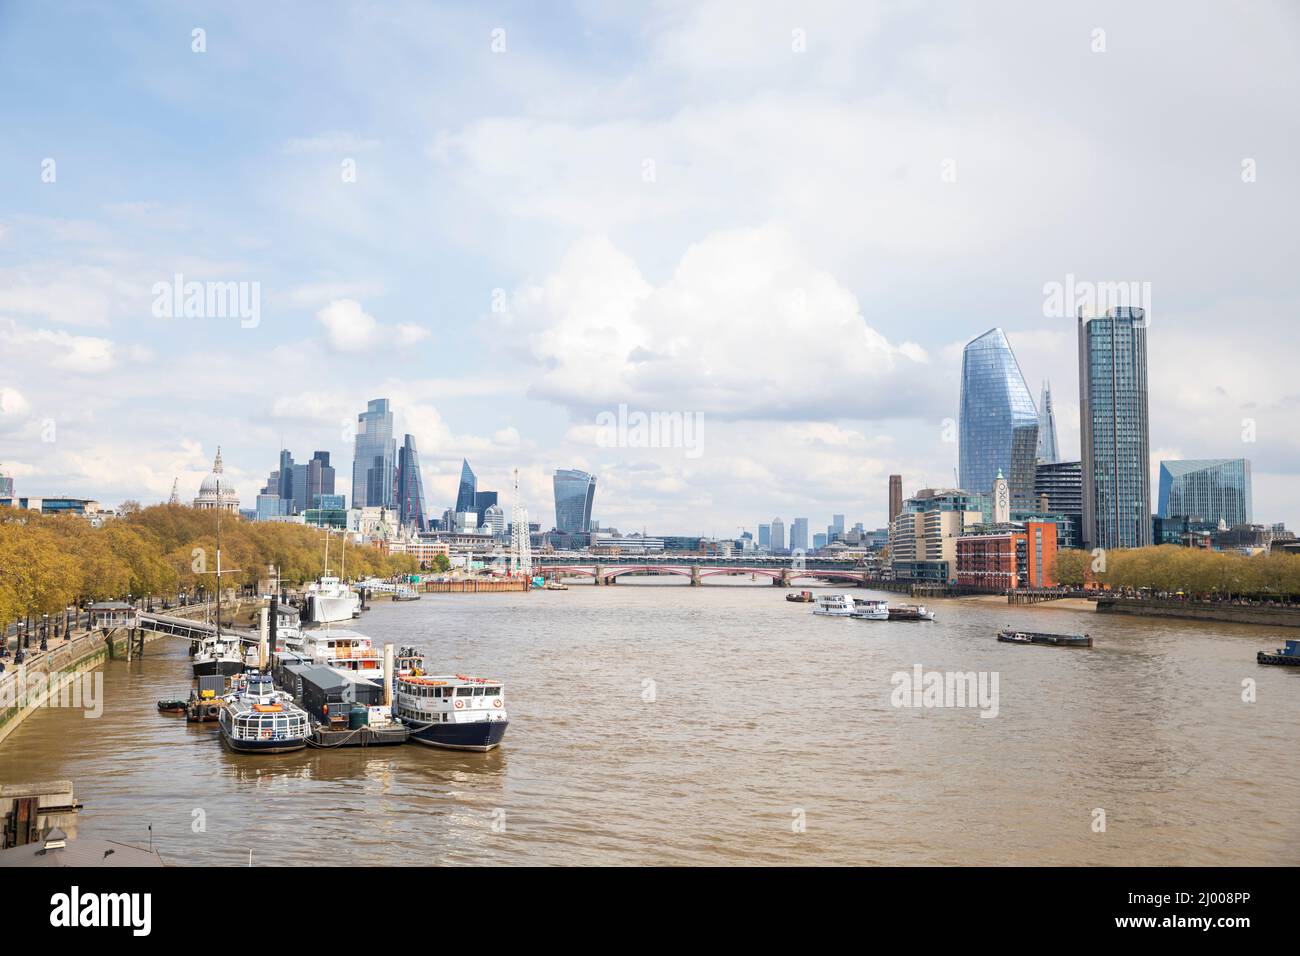 Vue vers les gratte-ciels de la City of London (L) et South Bank (R), Londres, Angleterre. Banque D'Images